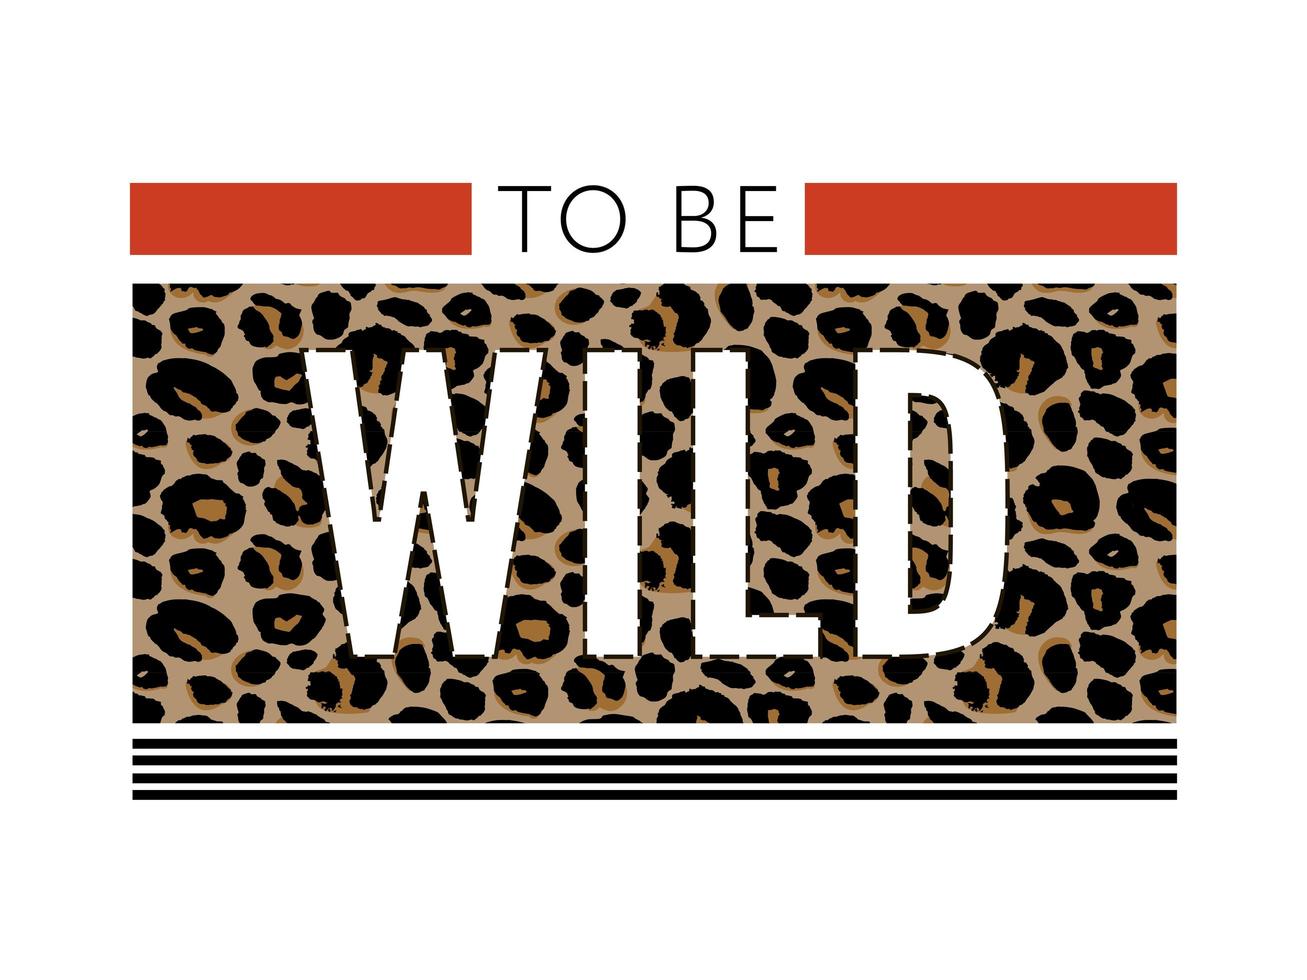 Born to be wild t-shirt slogan animali stampa di moda su sfondo nero. pattern con scritte ed effetto leopardato per tshirt e grafica abbigliamento, poster, stampe, cartoline. vettore